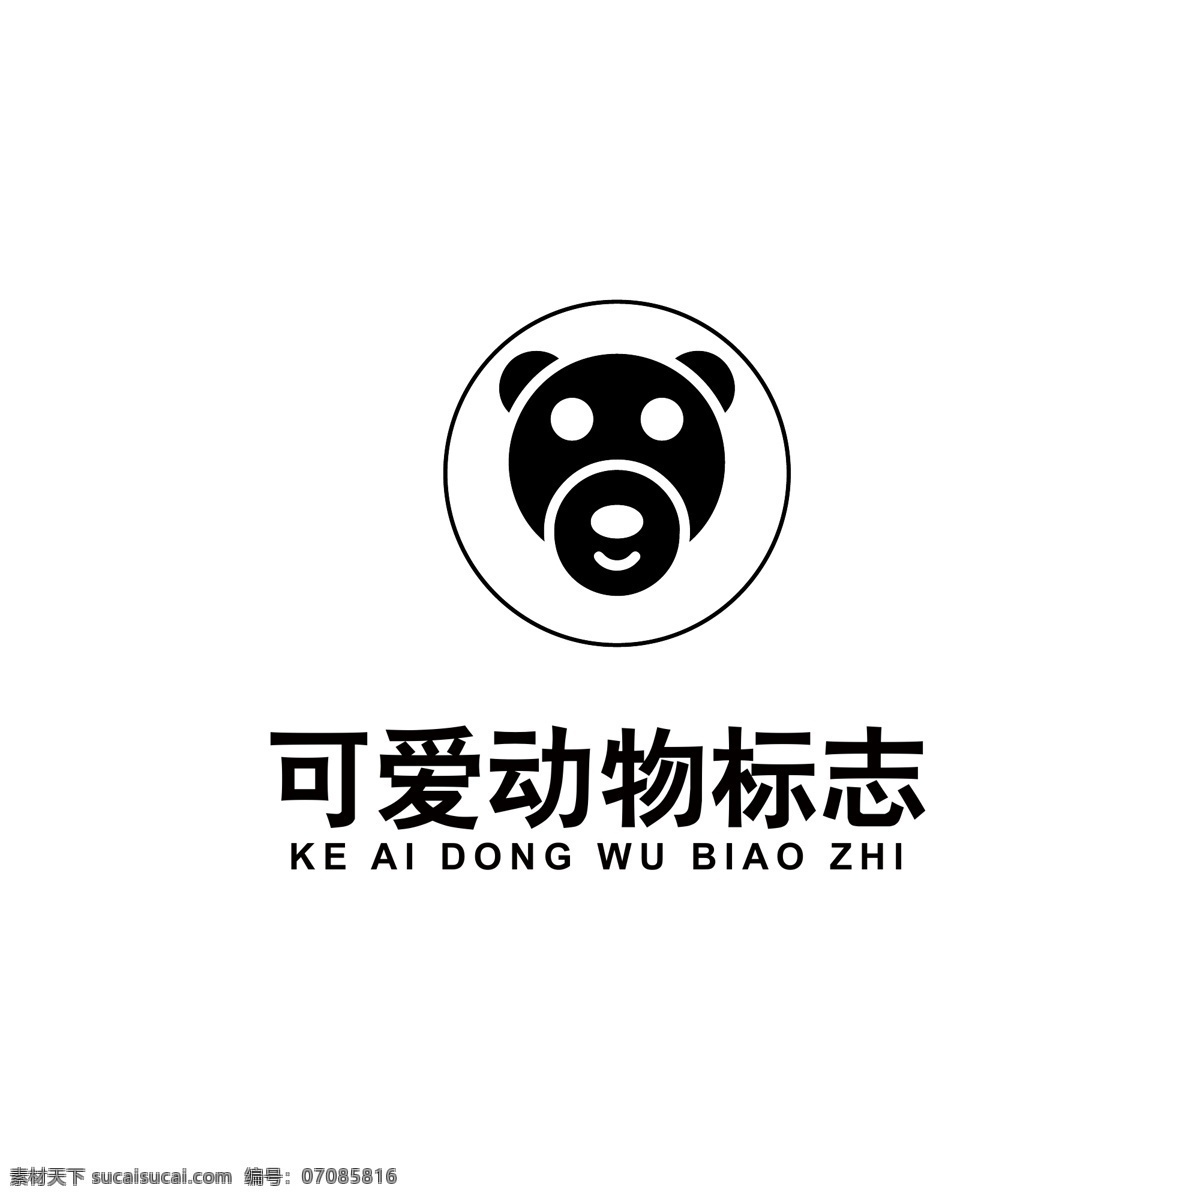 可爱 动物 logo 动物logo 小熊logo 可爱动物 品牌logo 小熊头像 logo设计 标识 标志 ai矢量